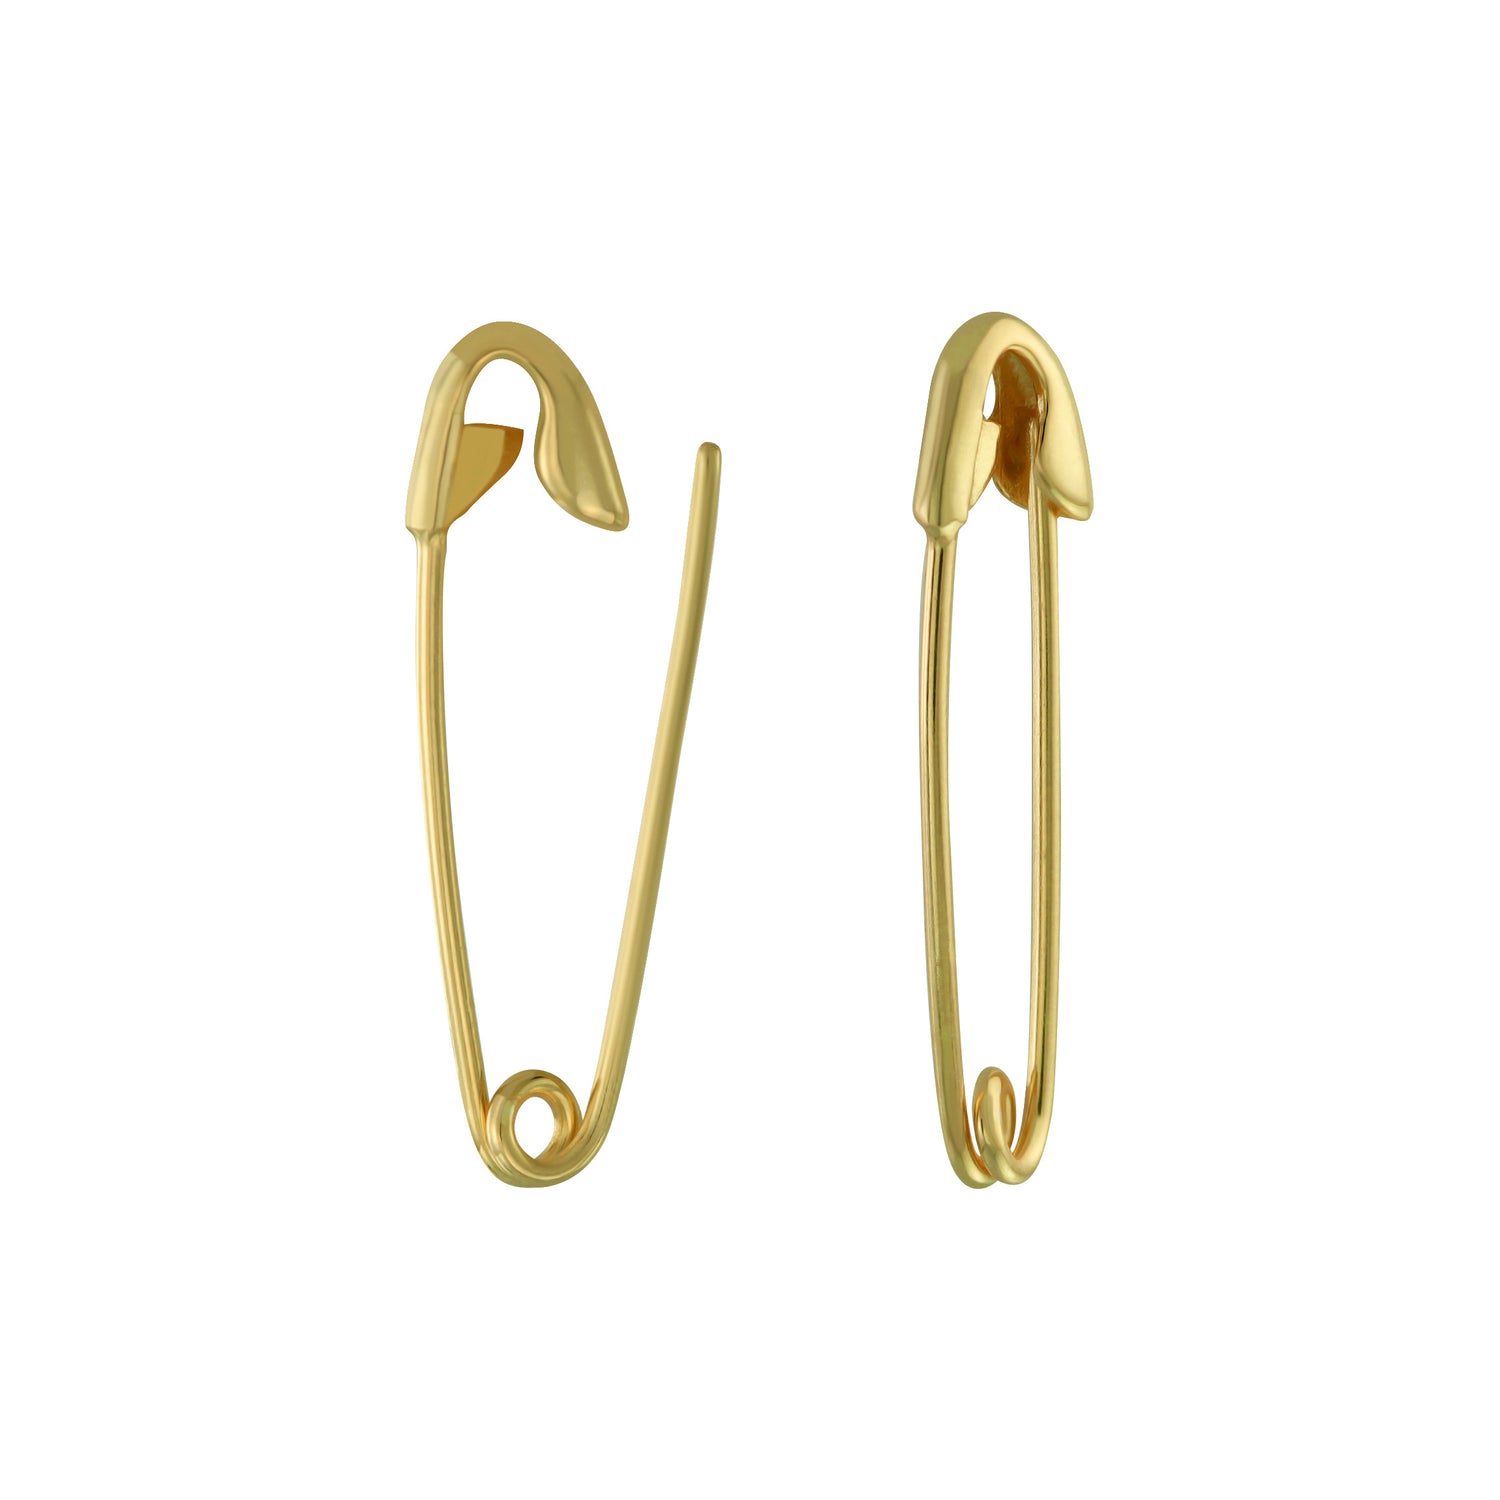 J&CO Jewellery Oxidized Safety Pin Earrings